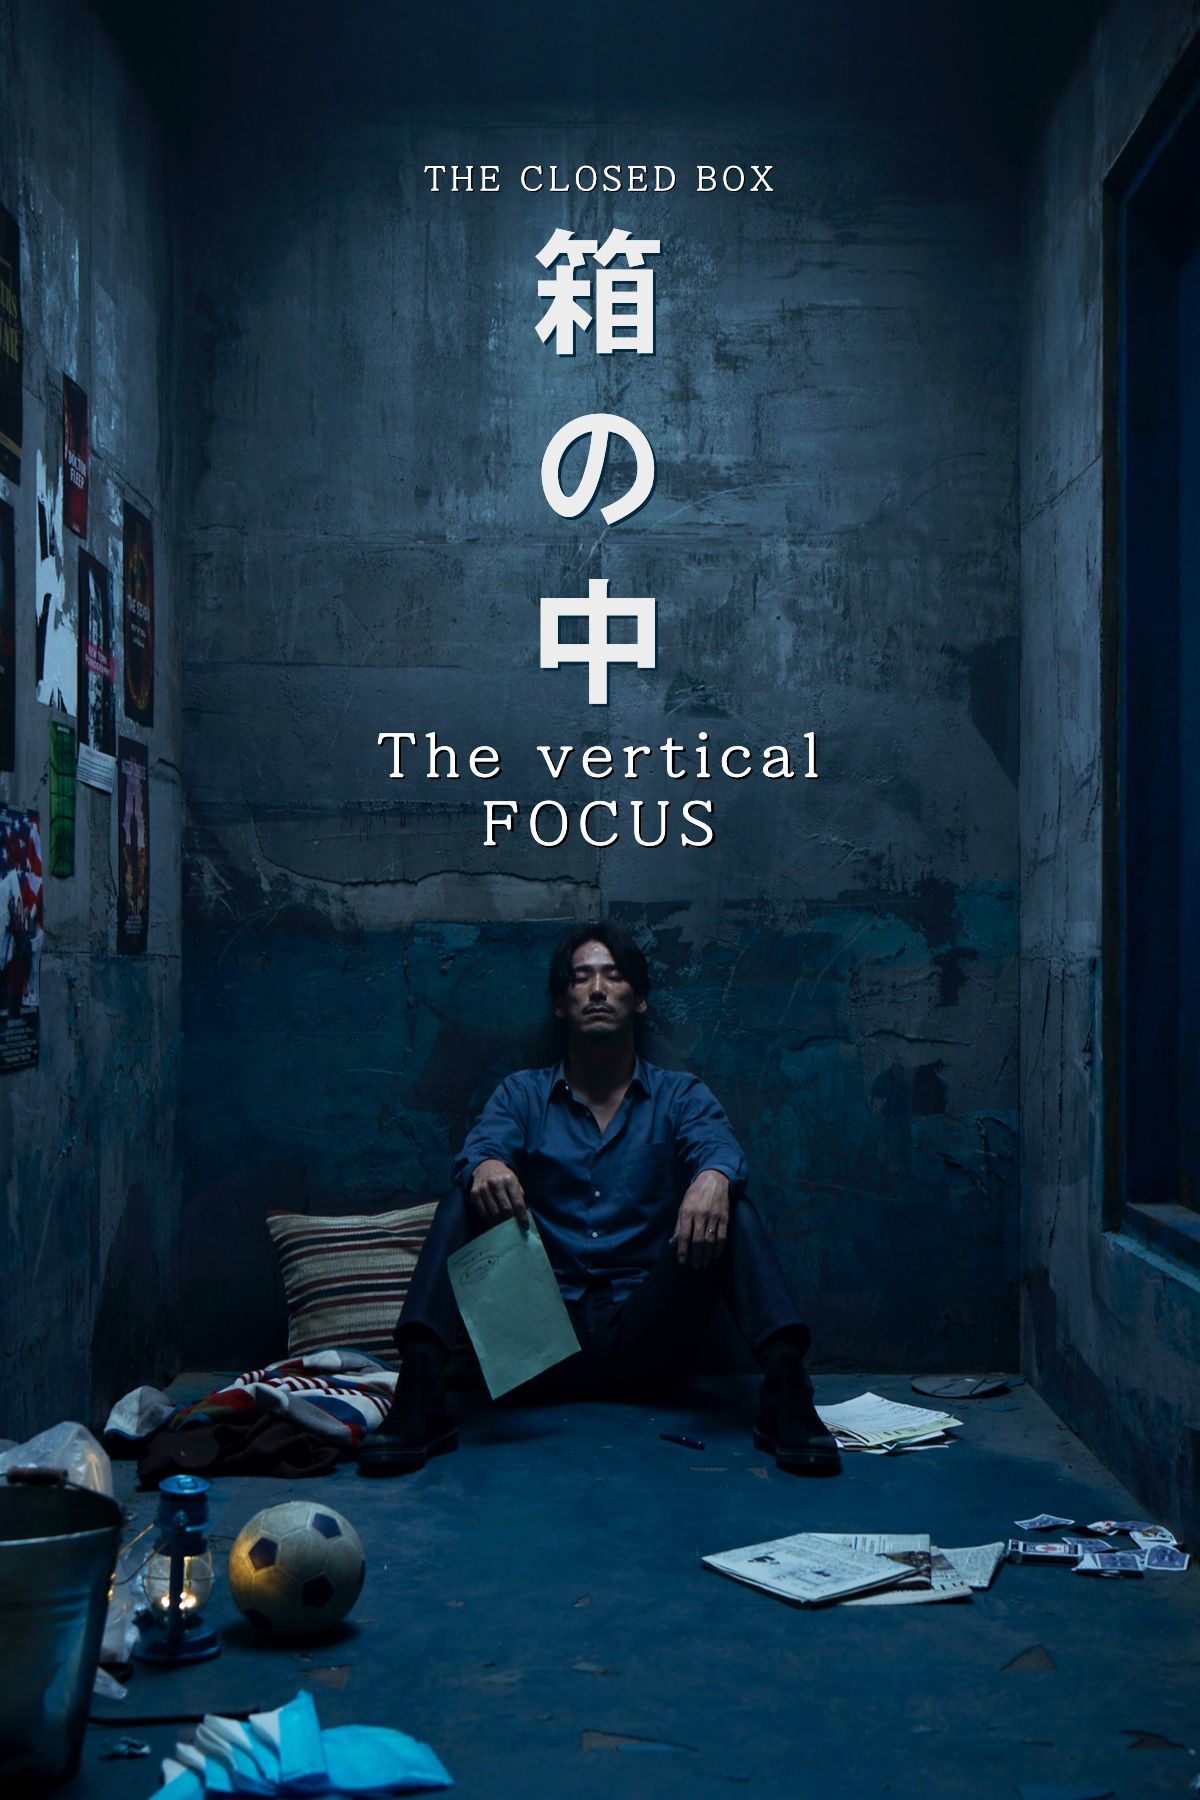 『箱の中 The vertical FOCUS』 smash.オリジナルシリーズ。12月5日より独占配信スタート。